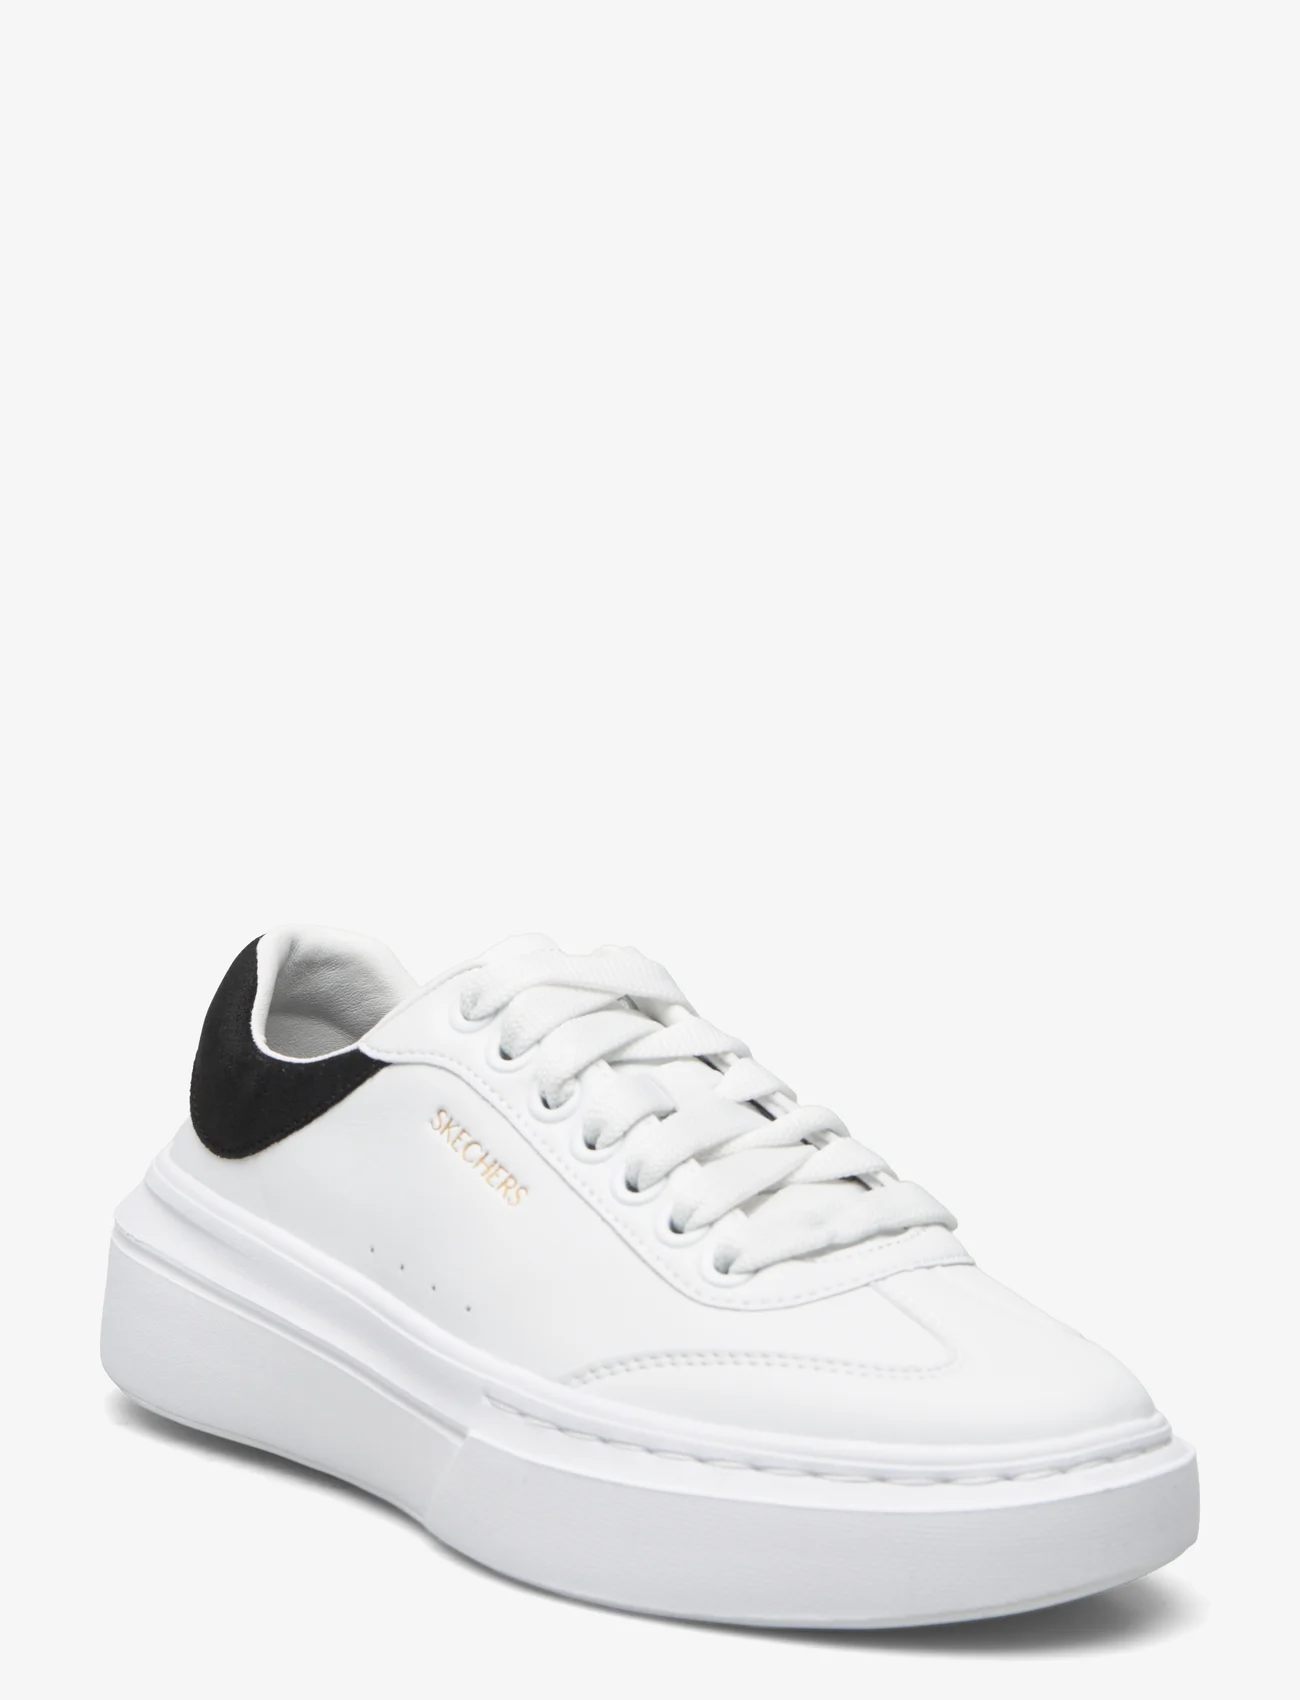 Skechers - Womens Cordova Classic - low top sneakers - wbk white black - 0